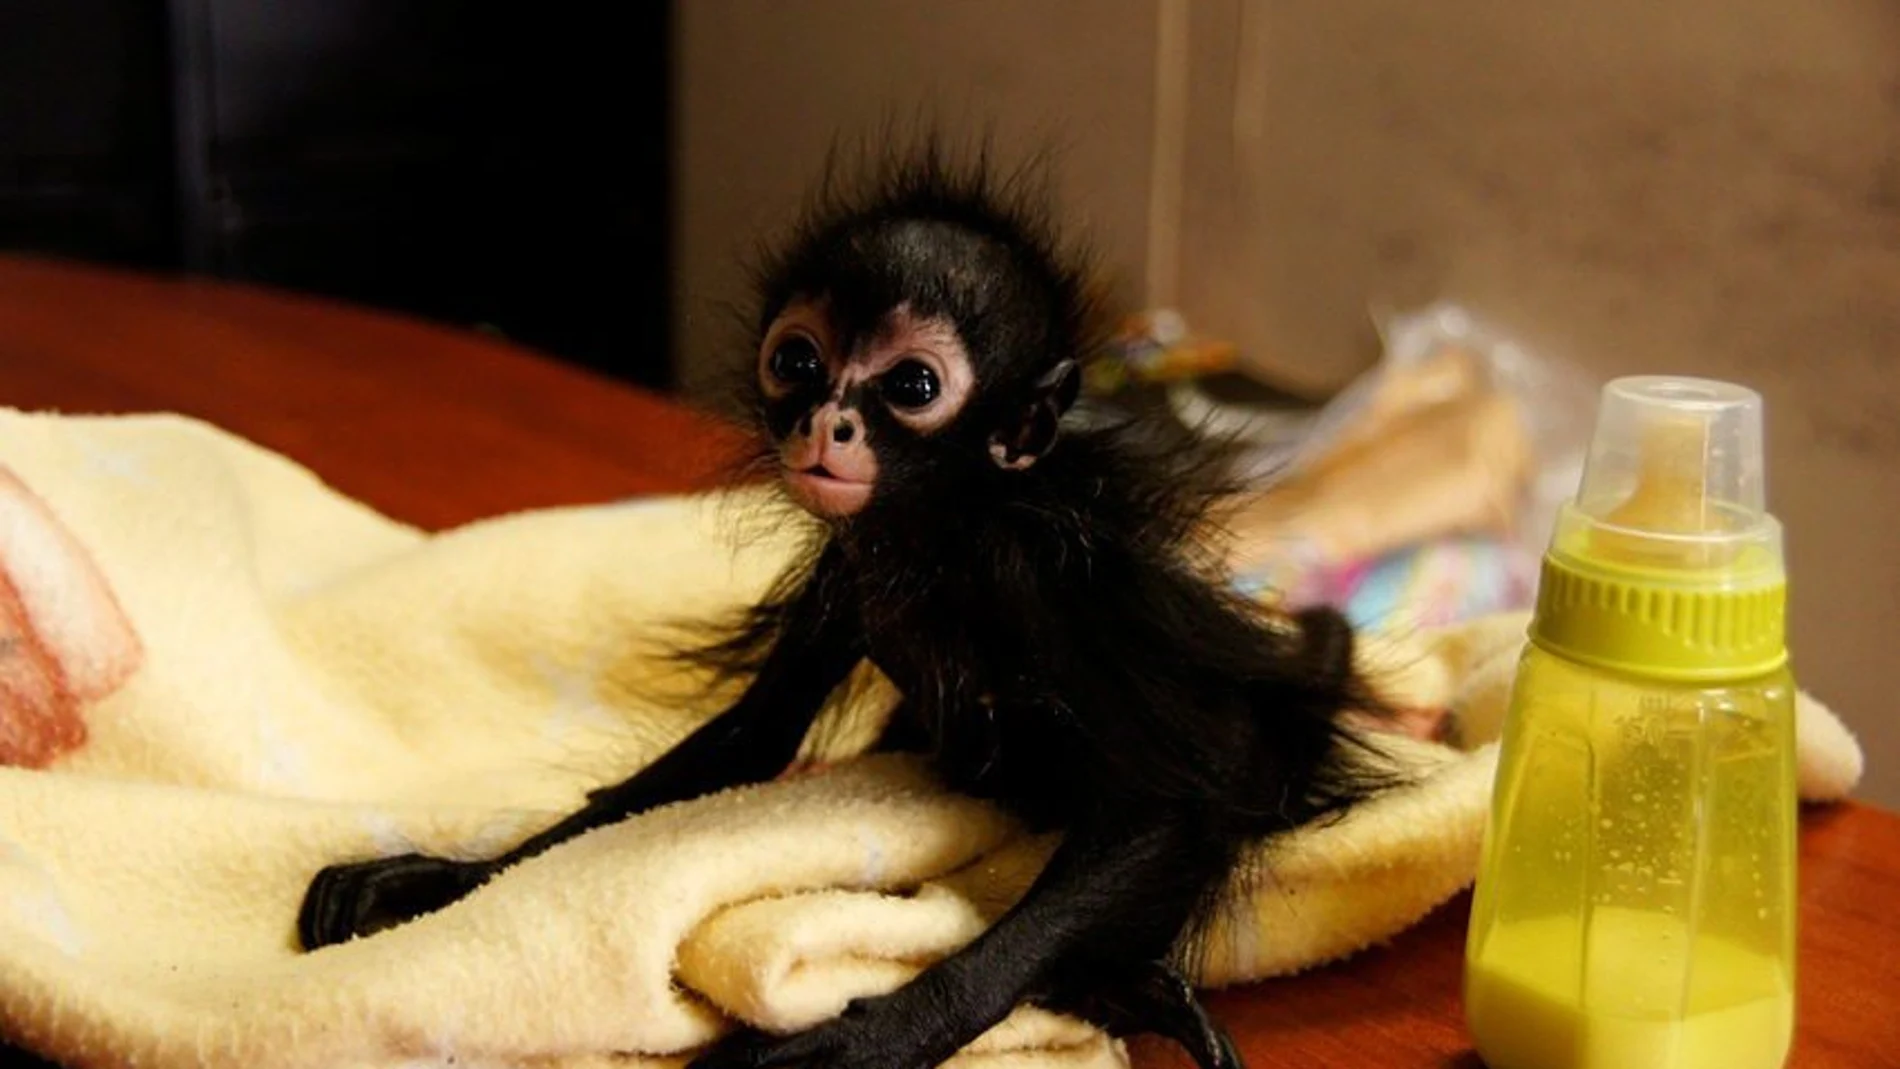 El mono araña, de aproximadamente dos semanas de vida, recuperado de comerciantes ilegales, en Ciudad de Guatemala (Guatemala)